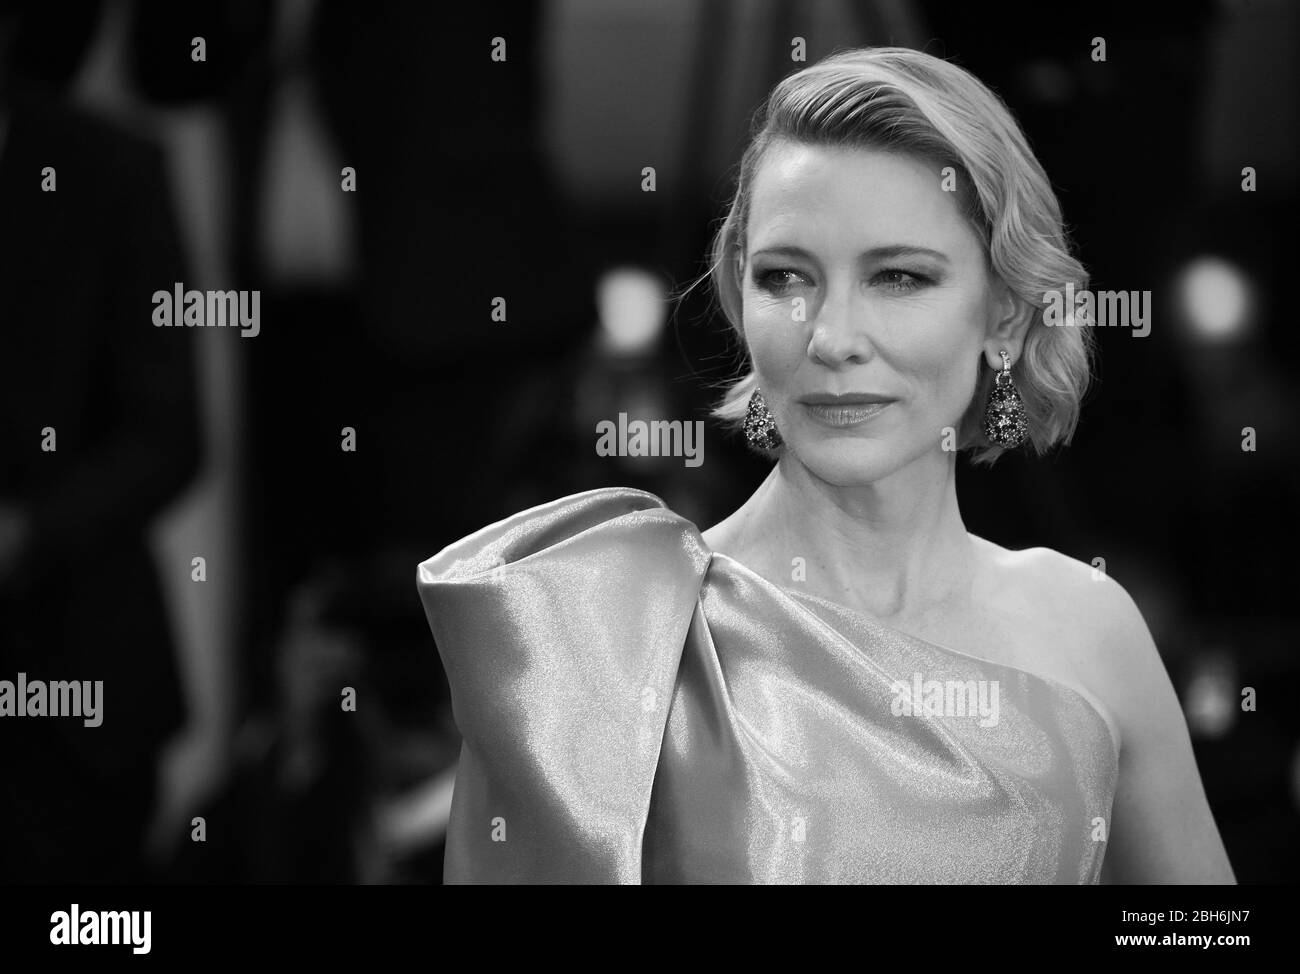 VENEZIA, ITALIA - 01 SETTEMBRE: Cate Blanchett cammina sul tappeto rosso davanti alla proiezione della 'Suspiria' durante il 75° Festival del Cinema di Venezia lo scorso settembre Foto Stock